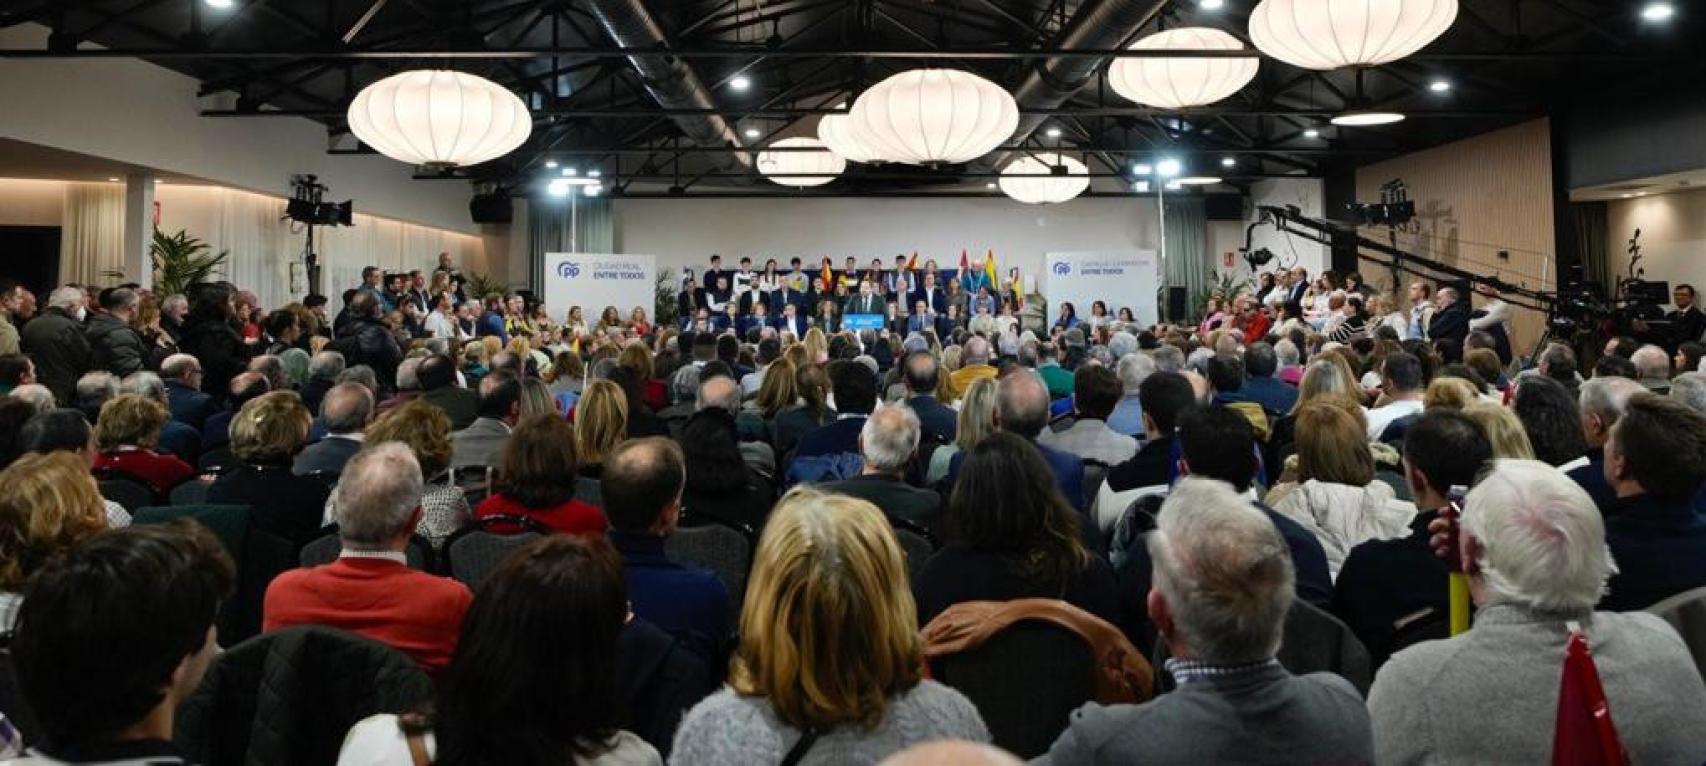 Presentación de la candidatura de Paco Cañizares en Ciudad Real. Foto: PP CLM.